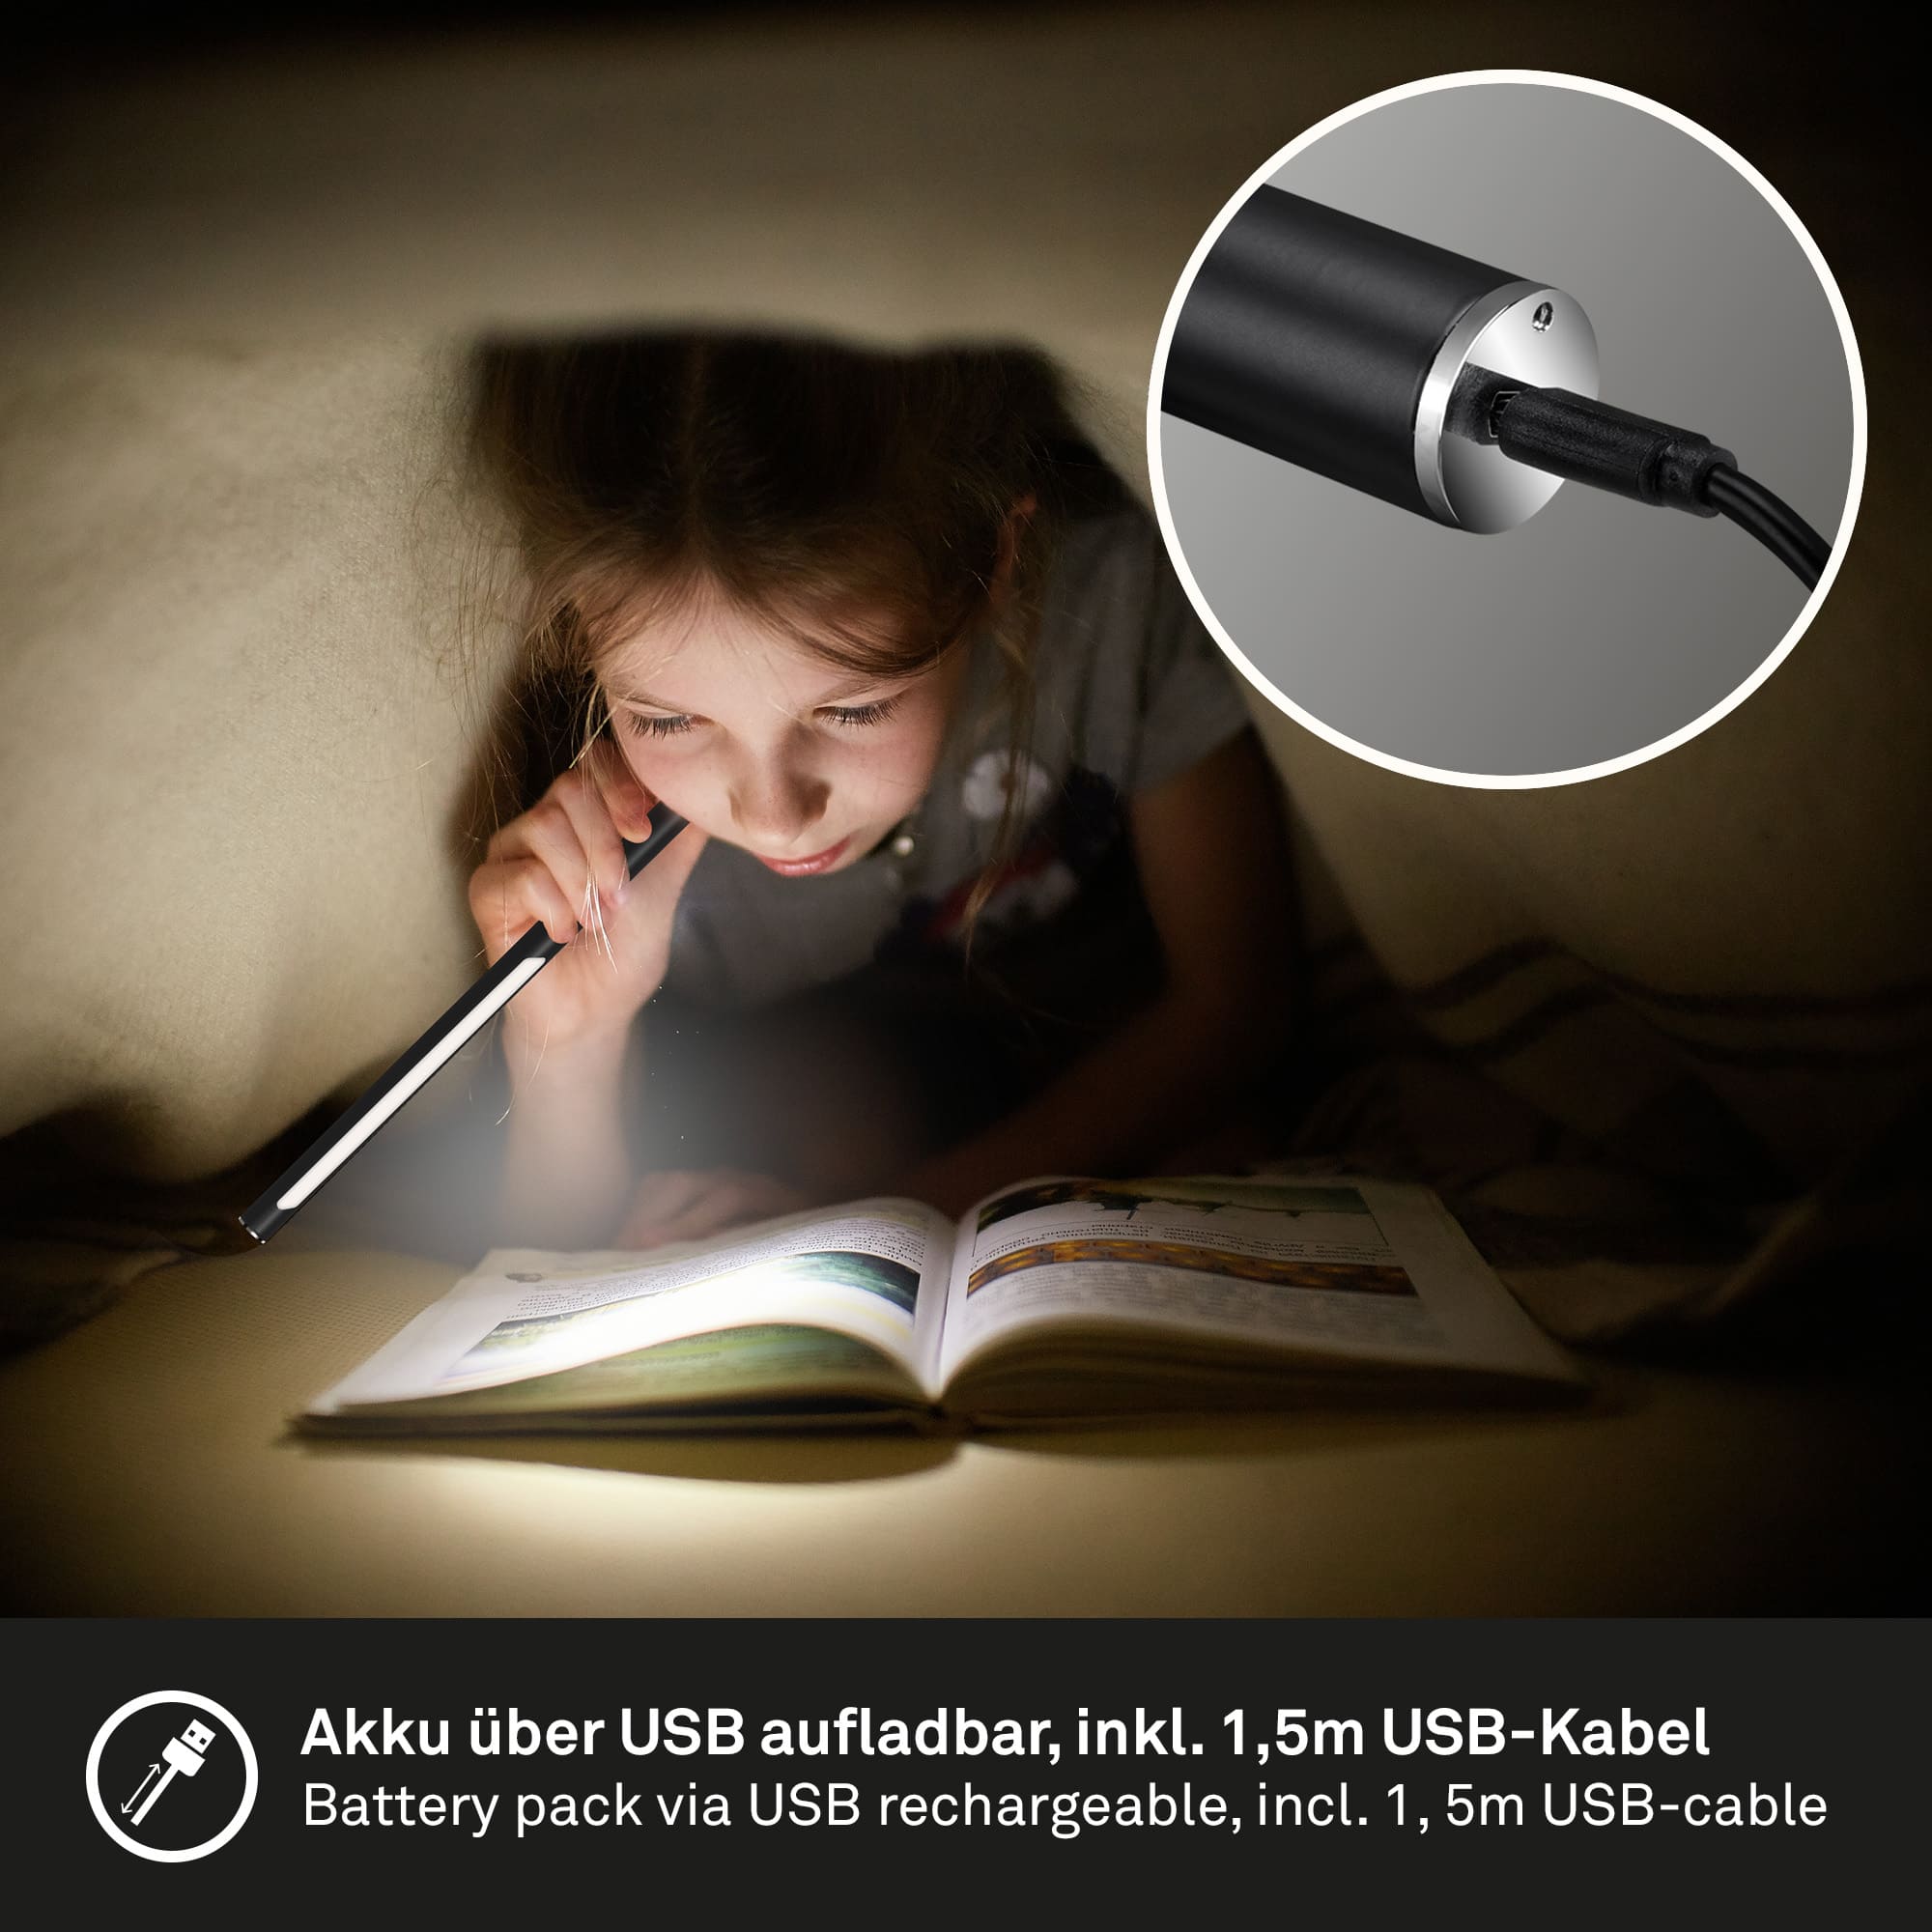 Lampe de bureau LED USB CCT avec tête amovible métal/plastique 1